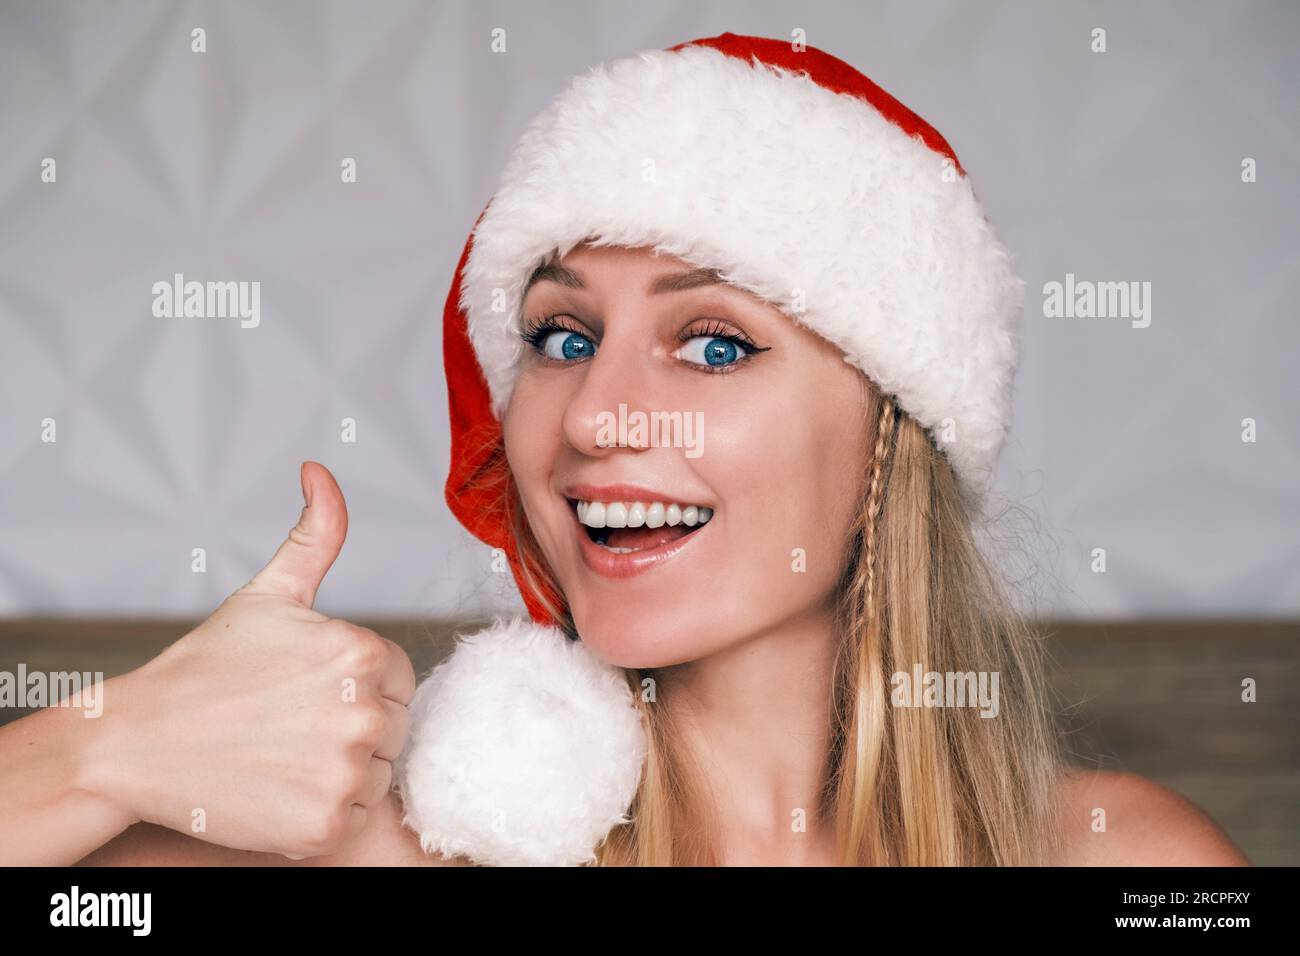 Sorridente Babbo Natale che indossa un cappello rosso che gestisce i pollici verso l'alto guardando la fotocamera. Ritratto di una giovane donna bionda dagli occhi blu con il cappello di Babbo Natale. Natale Foto Stock